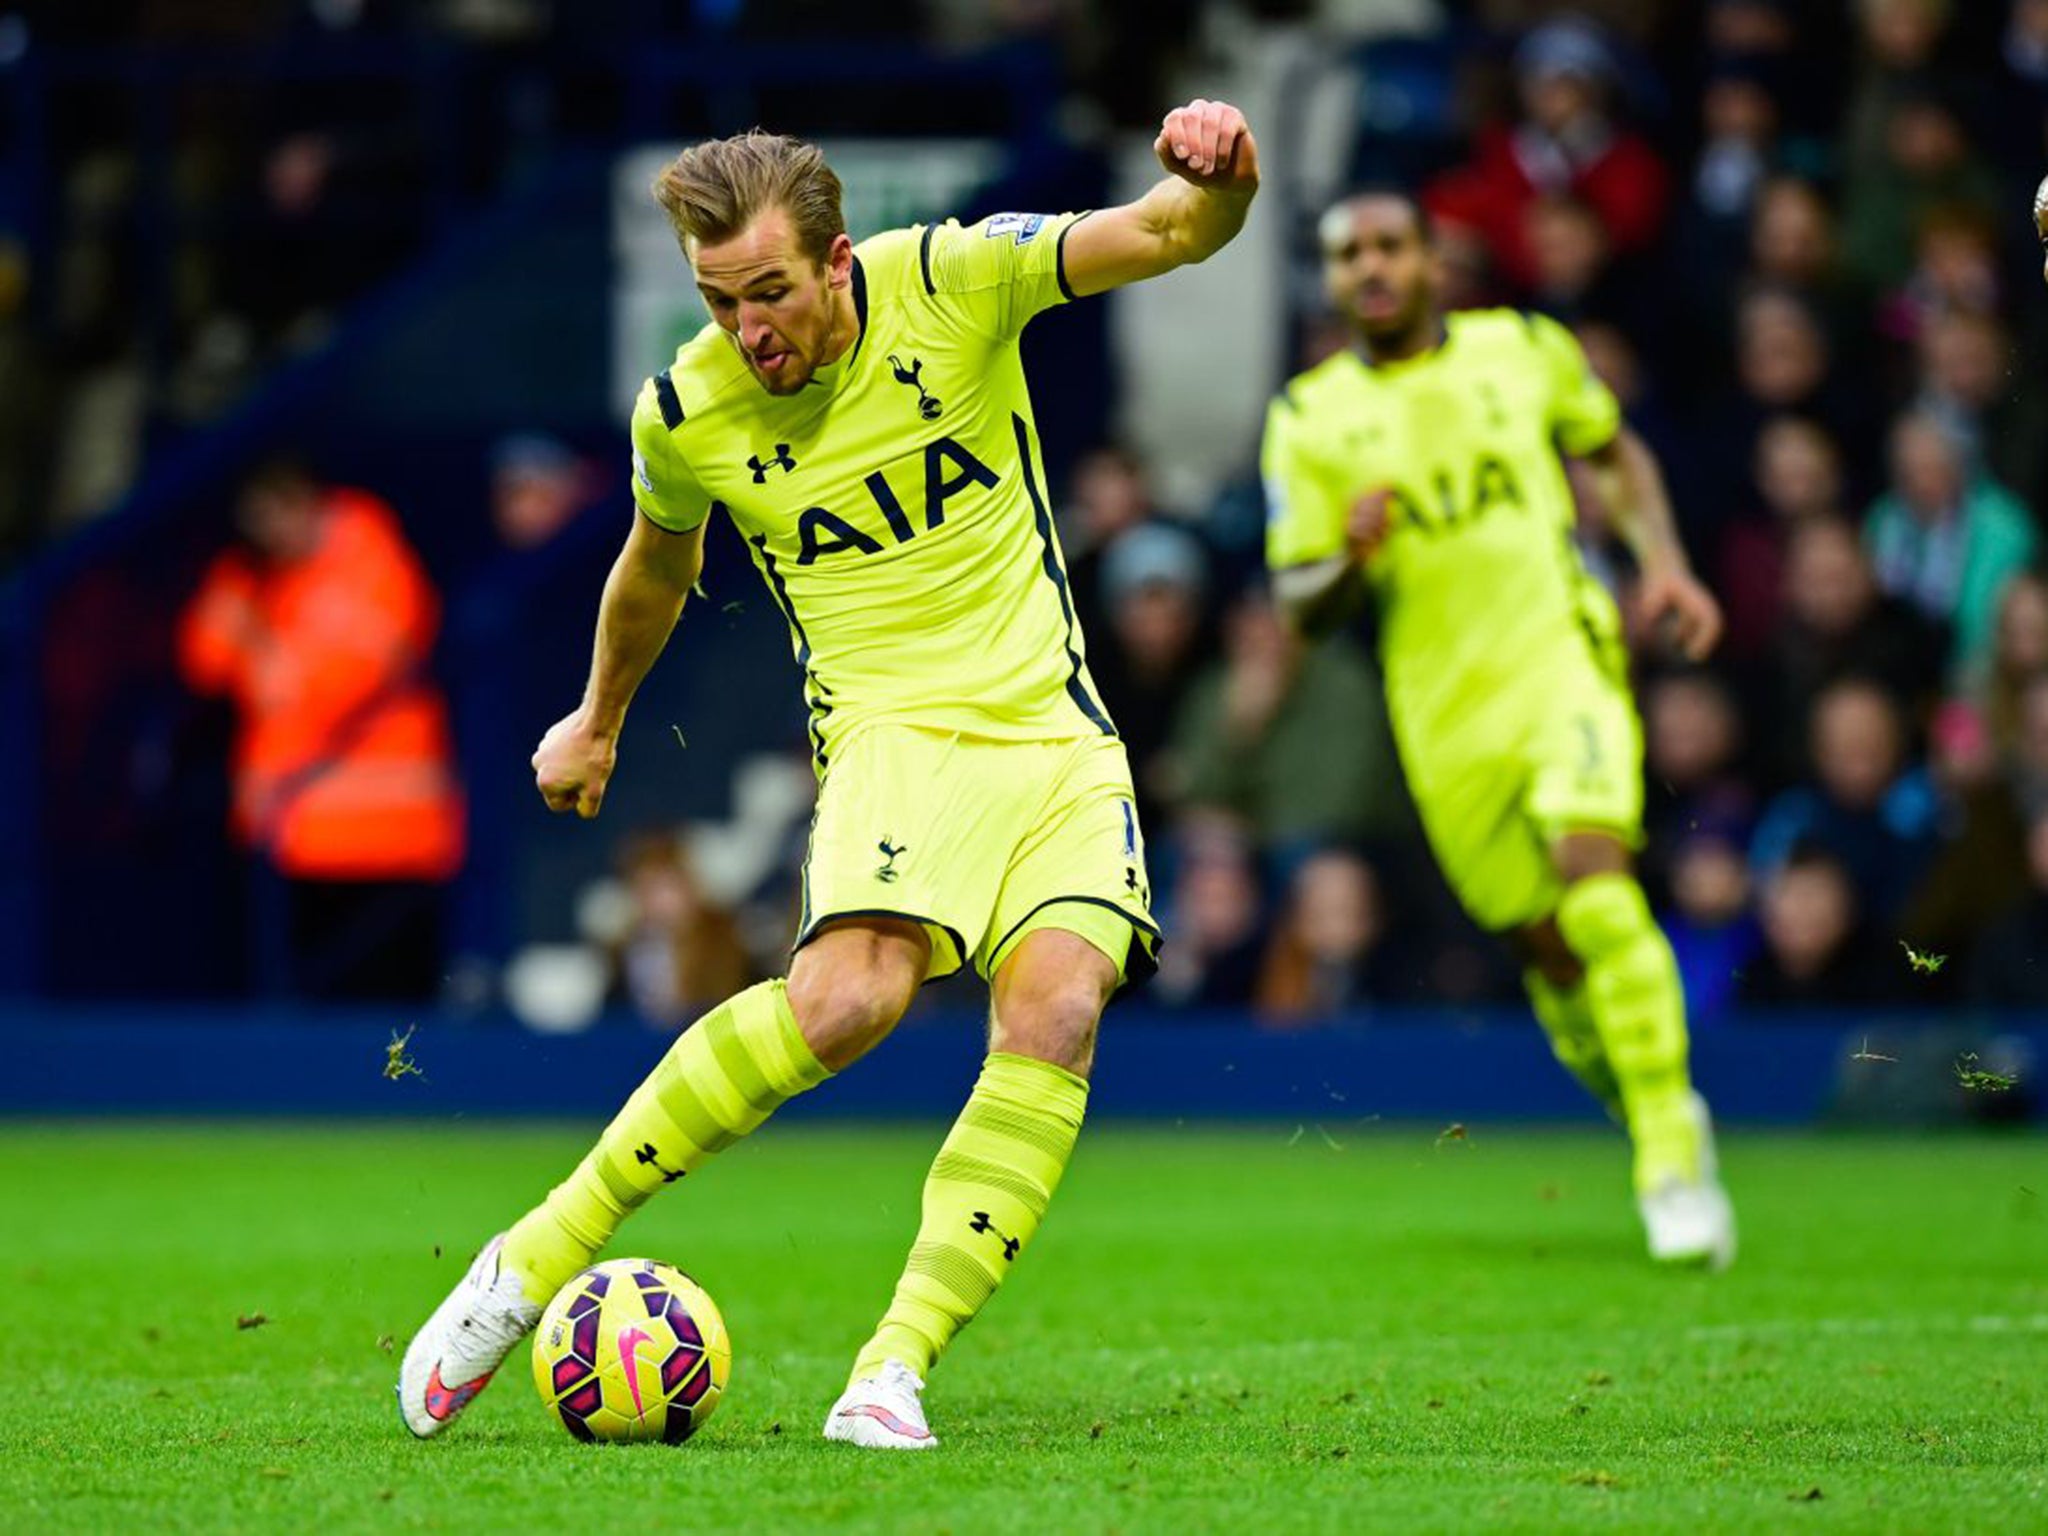 Tottenham striker Harry Kane scores against West Bromwich Albion, one of his 20 Premier League goals so far this season